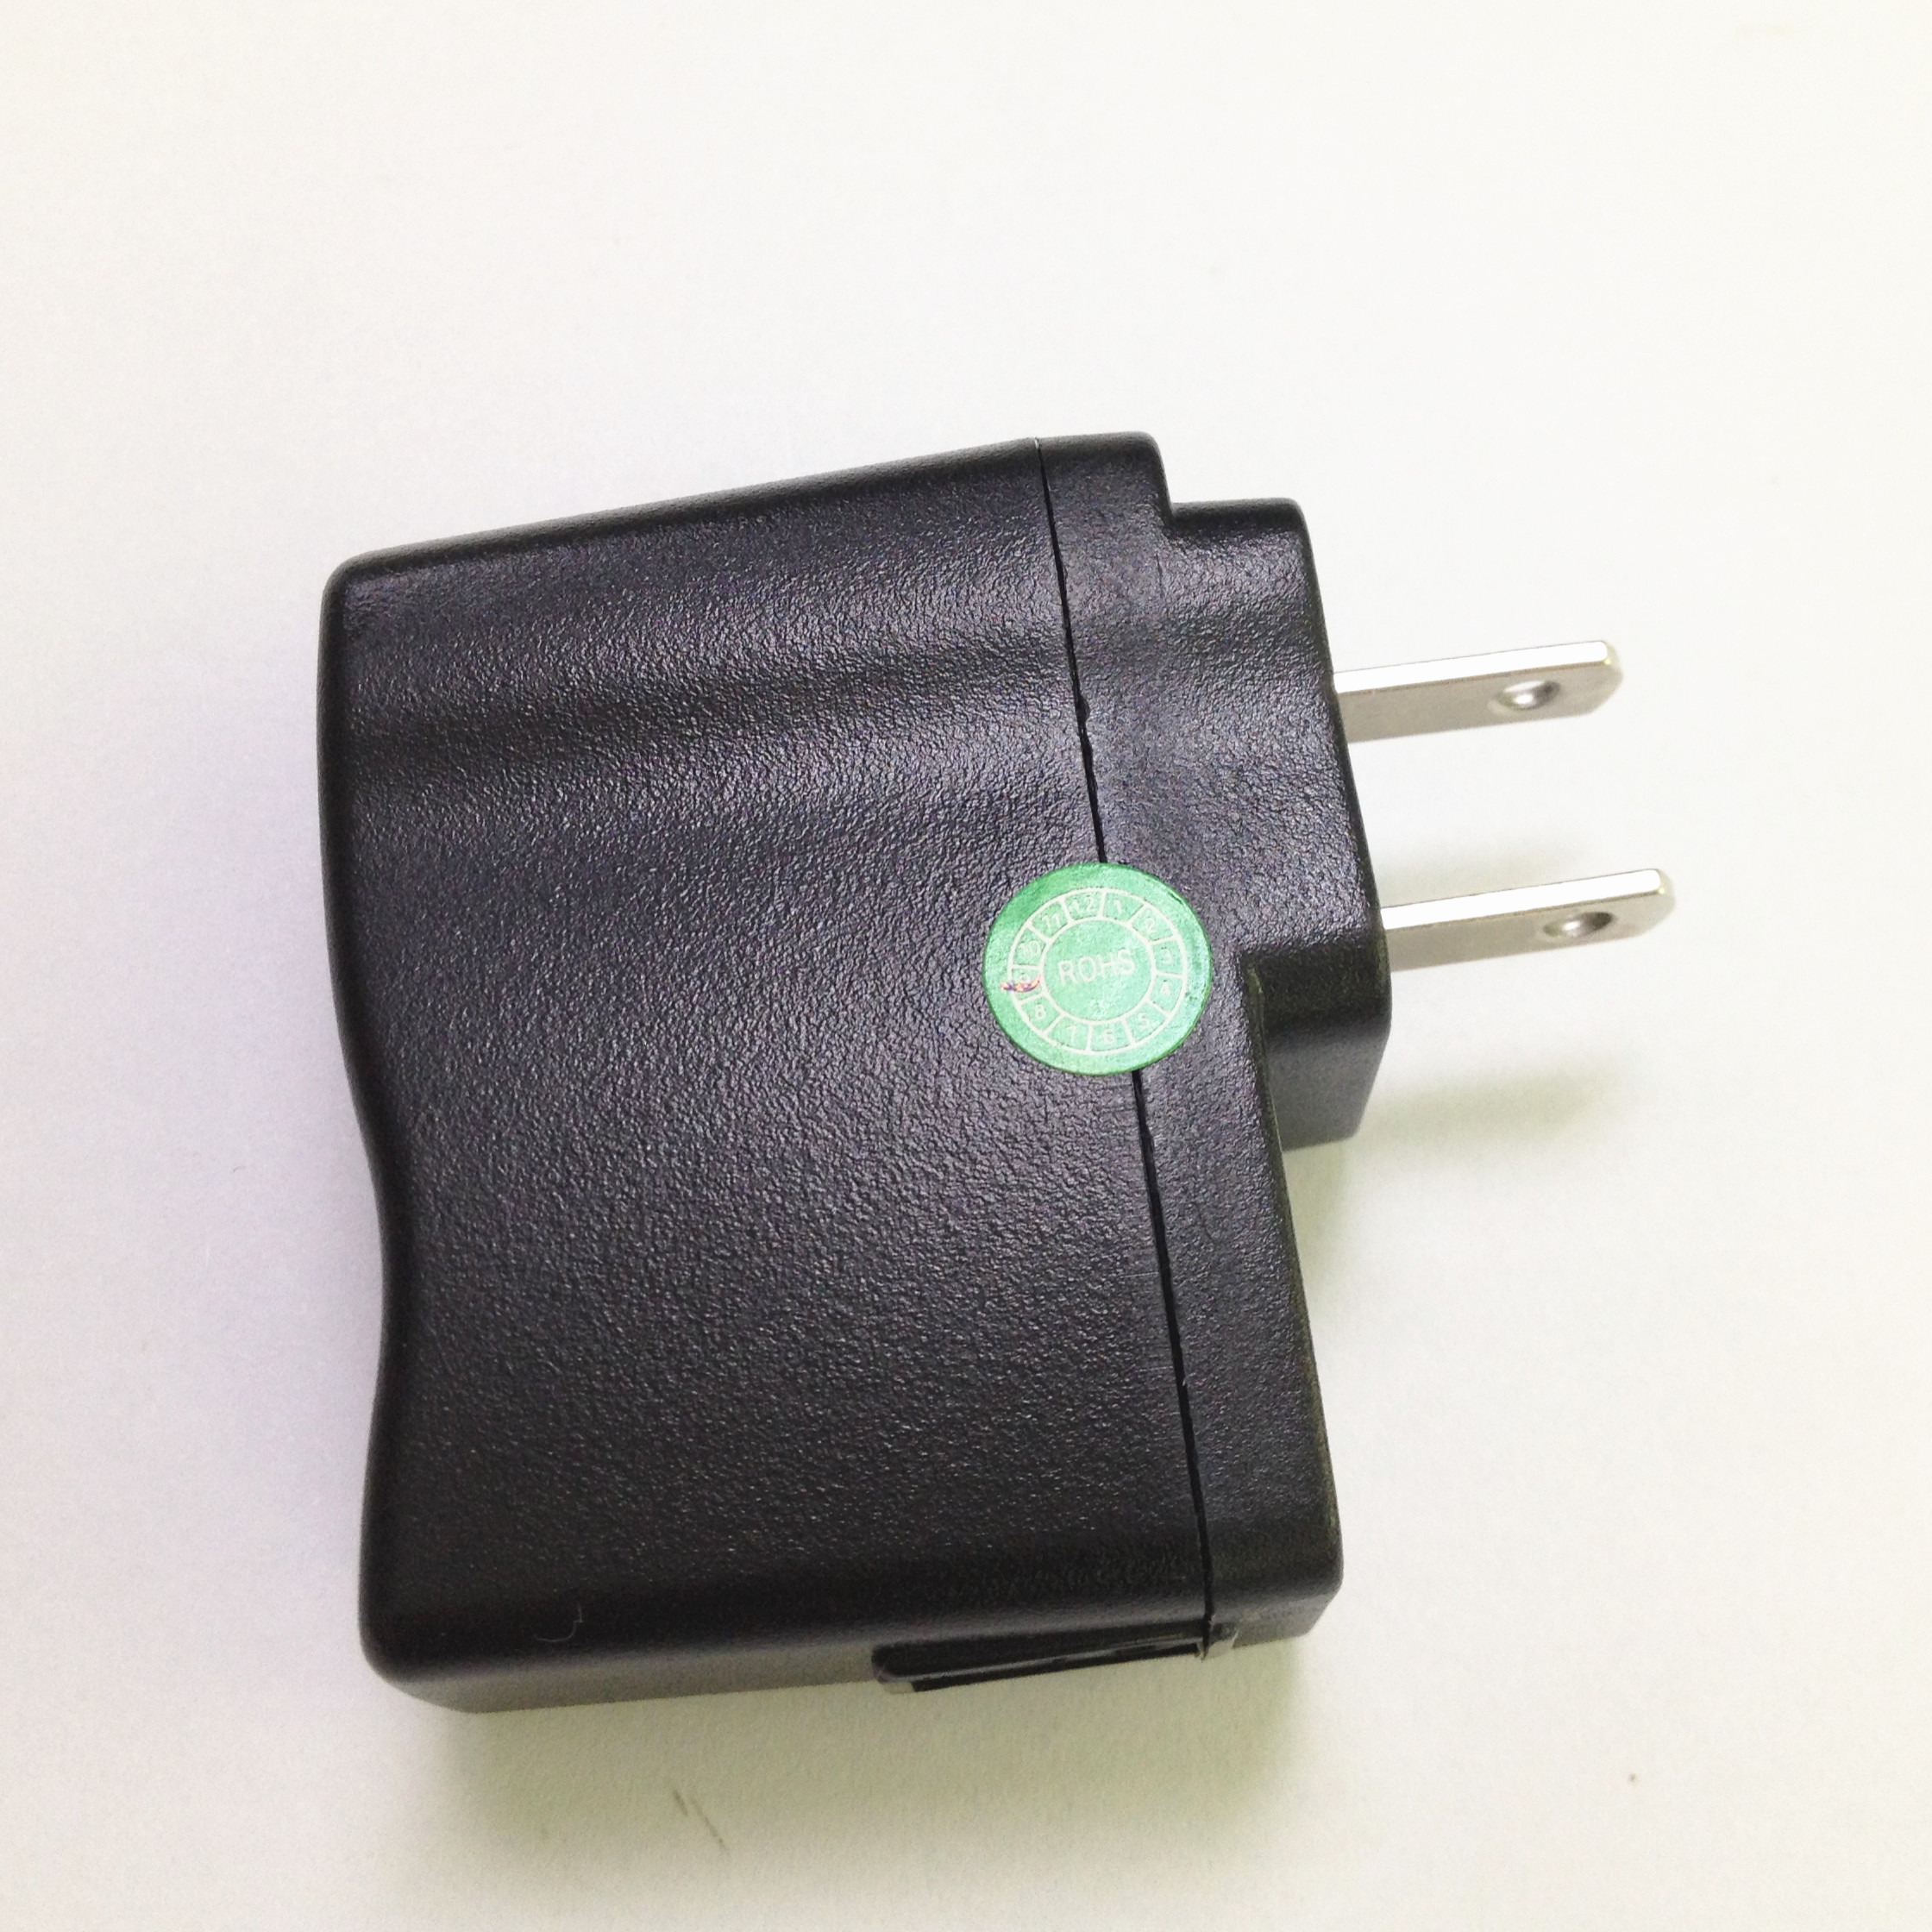 Adattatore di potere di CC 1A del supporto 5W 5V della parete di USB per il caricatore leggero LED/del MP3